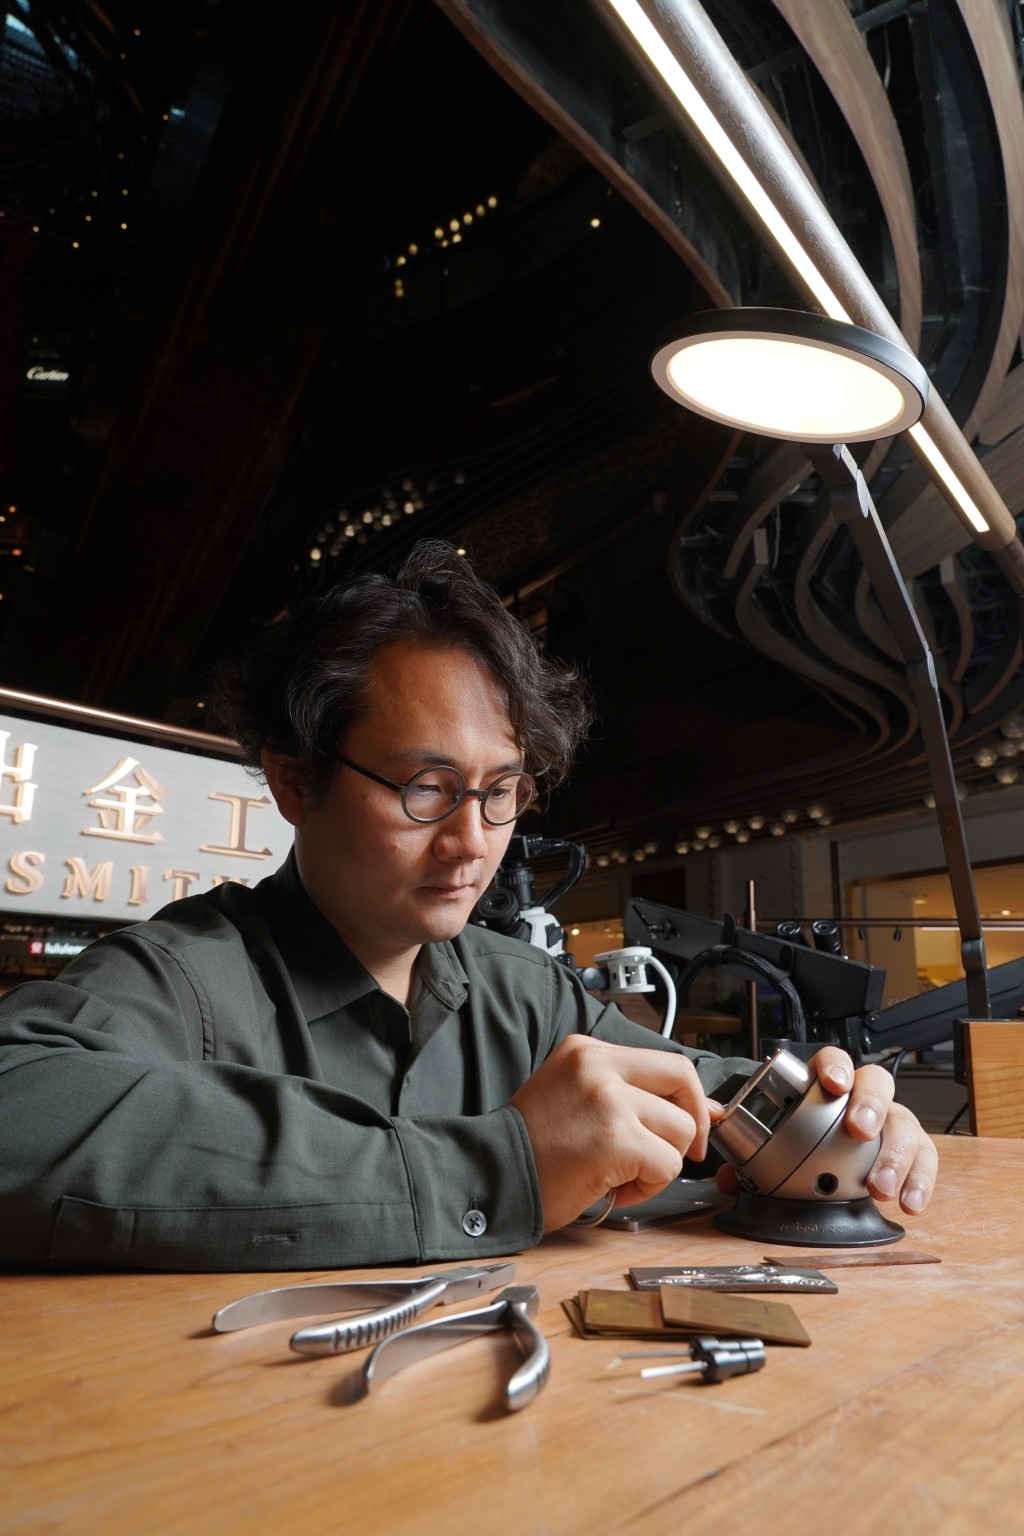 「日出金工」主理人陳業（Yve Chan），是一位香港設計師、寶石學家、工匠和企業家。